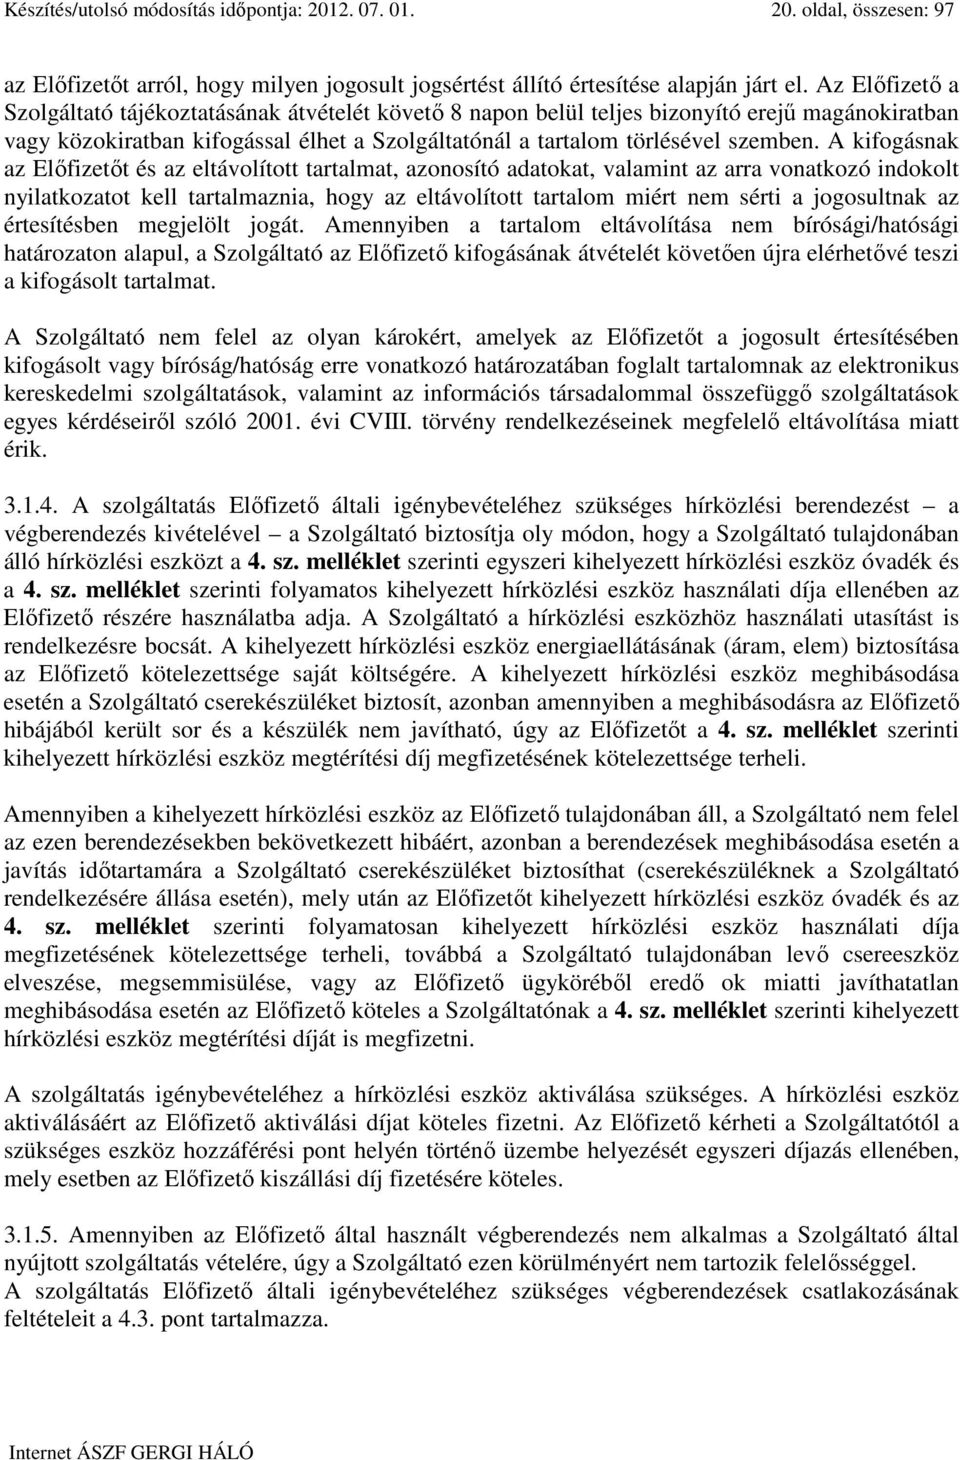 A kifogásnak az Elıfizetıt és az eltávolított tartalmat, azonosító adatokat, valamint az arra vonatkozó indokolt nyilatkozatot kell tartalmaznia, hogy az eltávolított tartalom miért nem sérti a